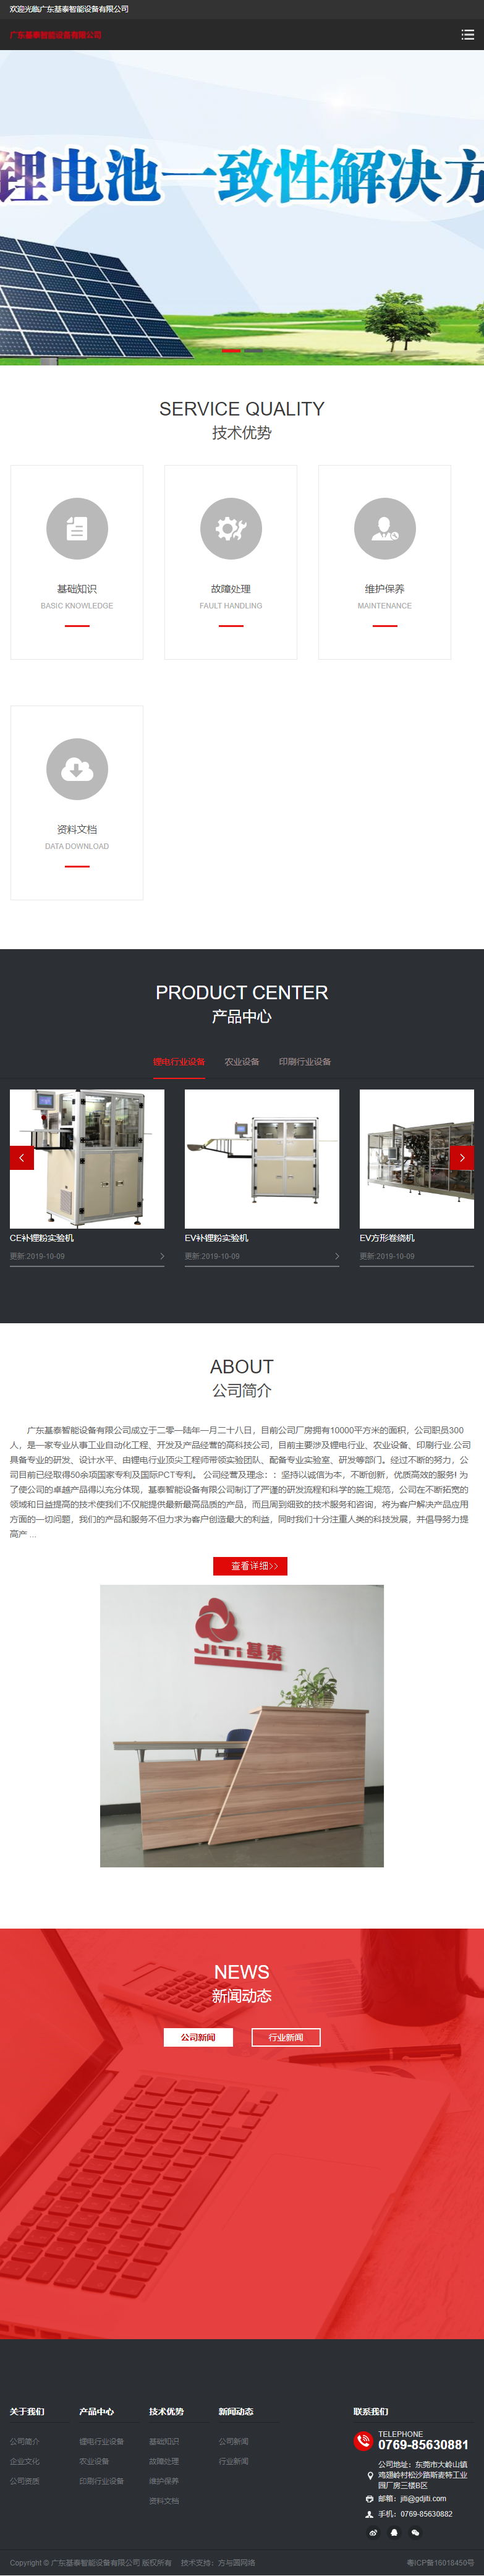 广东基泰智能设备有限公司网站案例